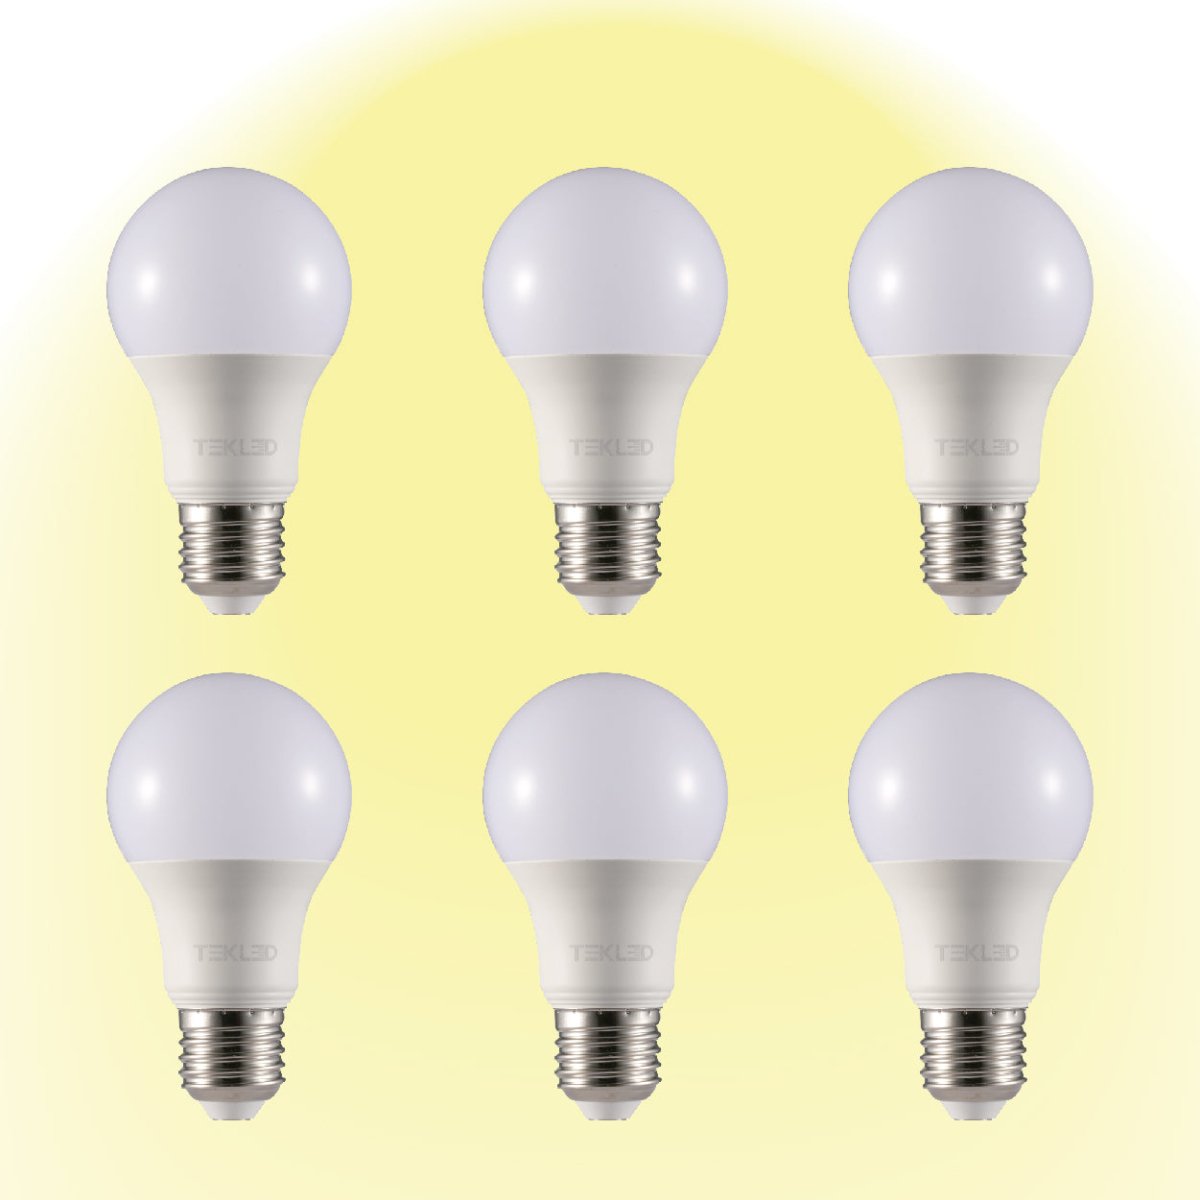 Virgo LED GLS Bulb A60 E27 Edison Screw 2700K Warm White 9 W Pack of 6 527-15656